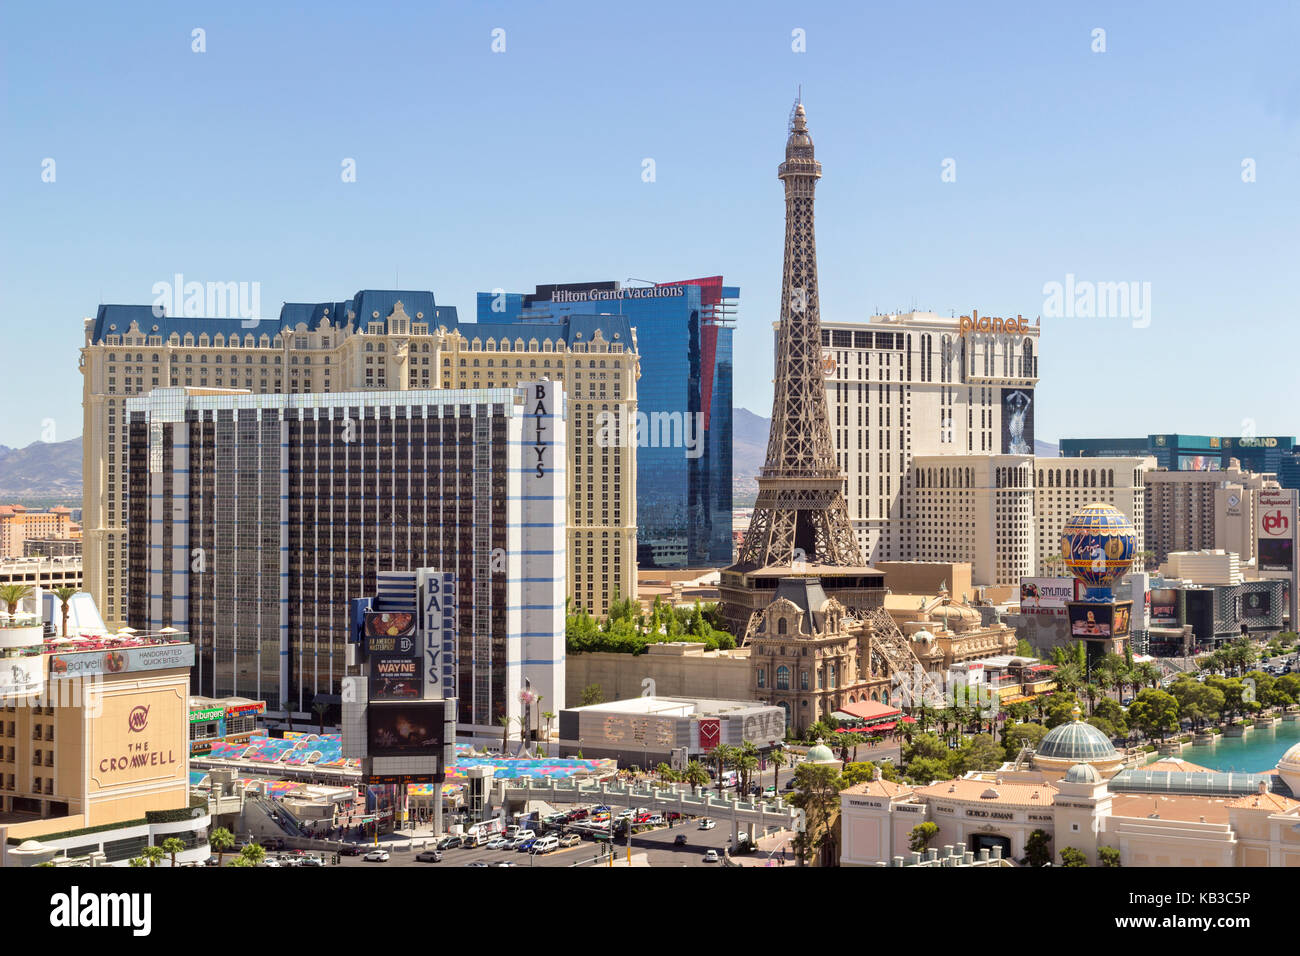 Un jour skyline vue de plusieurs casino and resort sur Las Vegas Boulevard, à Las Vegas, Nevada. Banque D'Images